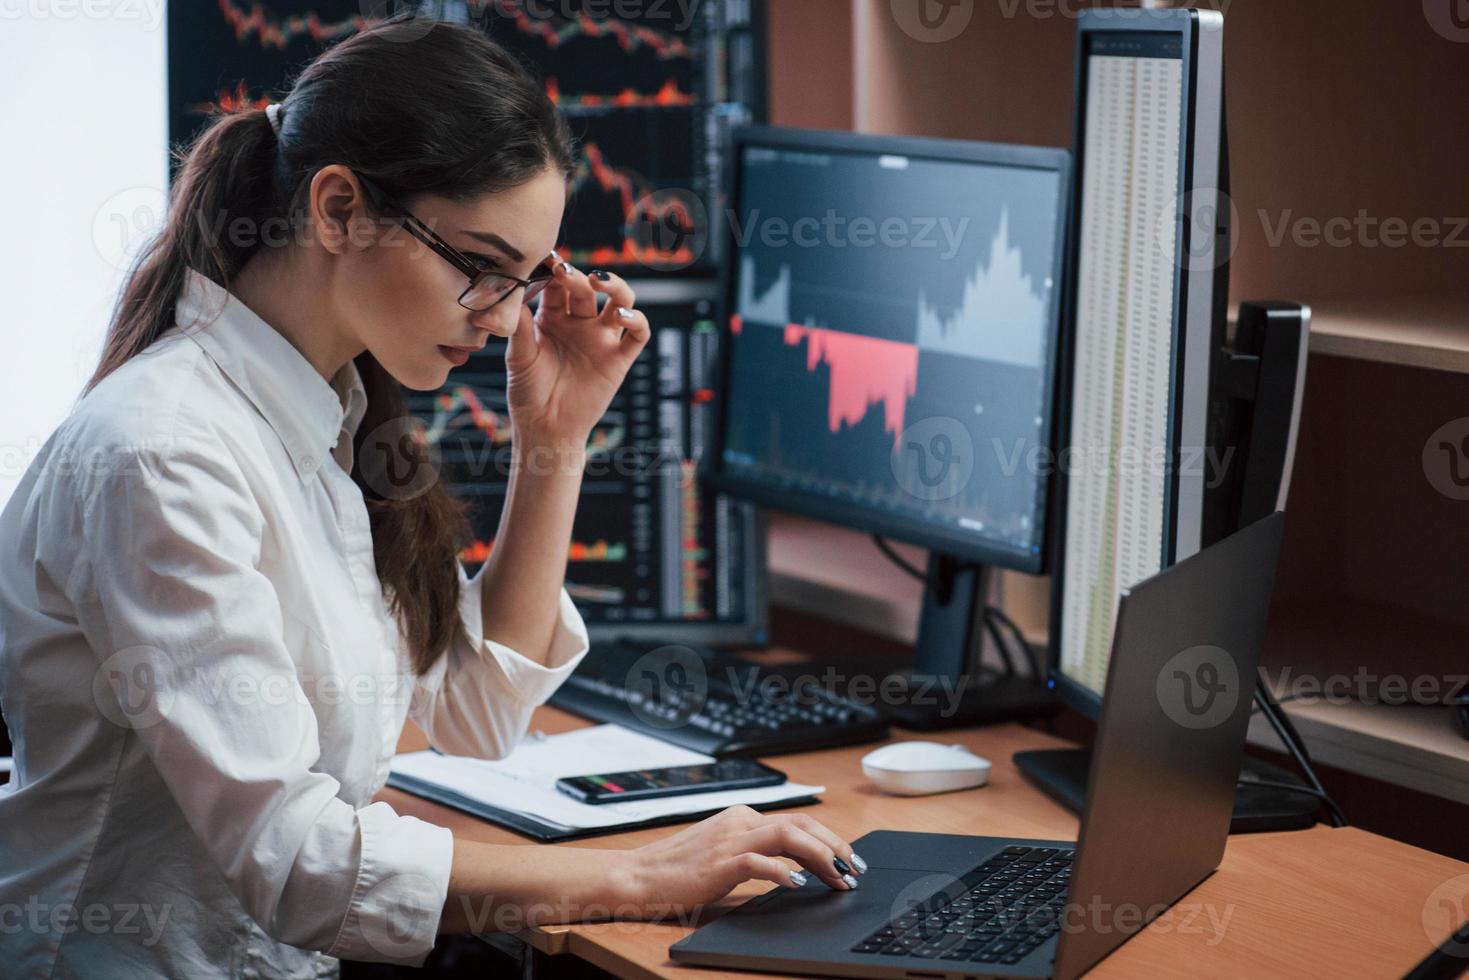 vidrör glasögonen. kvinna som arbetar online på kontoret med flera datorskärmar i indexdiagram foto